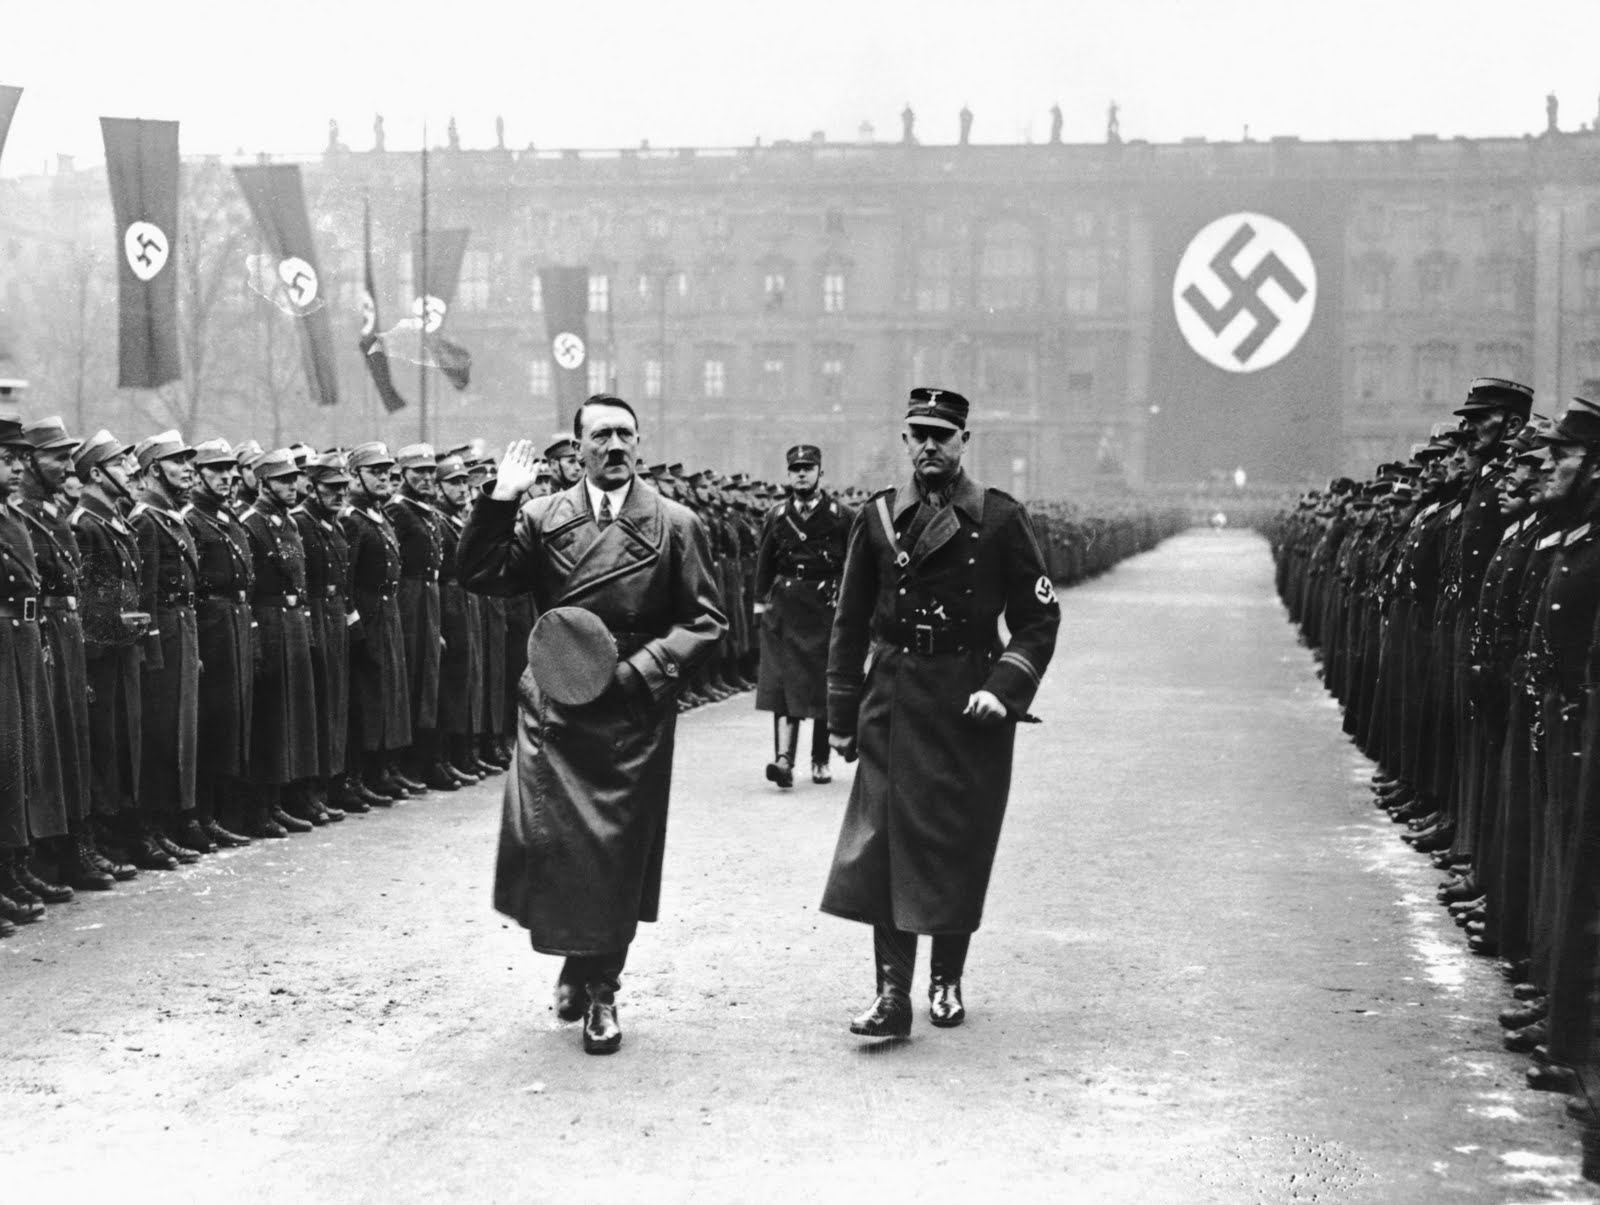 جنگ جهانی دوم با حمله هیتلر به لهستان در اول سپتامبر 1939 آغاز شد و پس از آن بود که کشورهای فرانسه و بریتانیا به آلمان اعلان جنگ دادند.